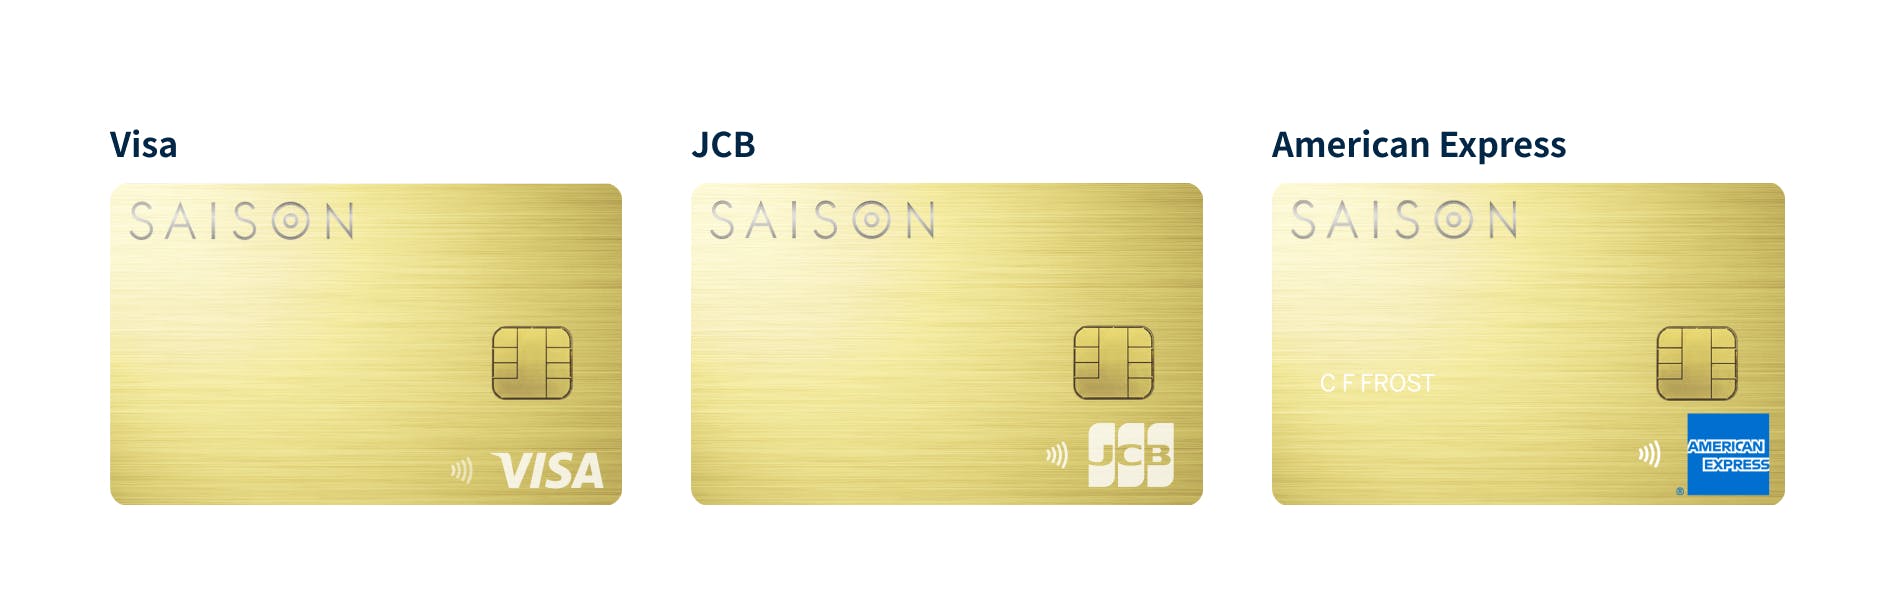 国際ブランド別のカード券面画像。それぞれ右下にVisa、JCB、American Expressのロゴが表示されている。